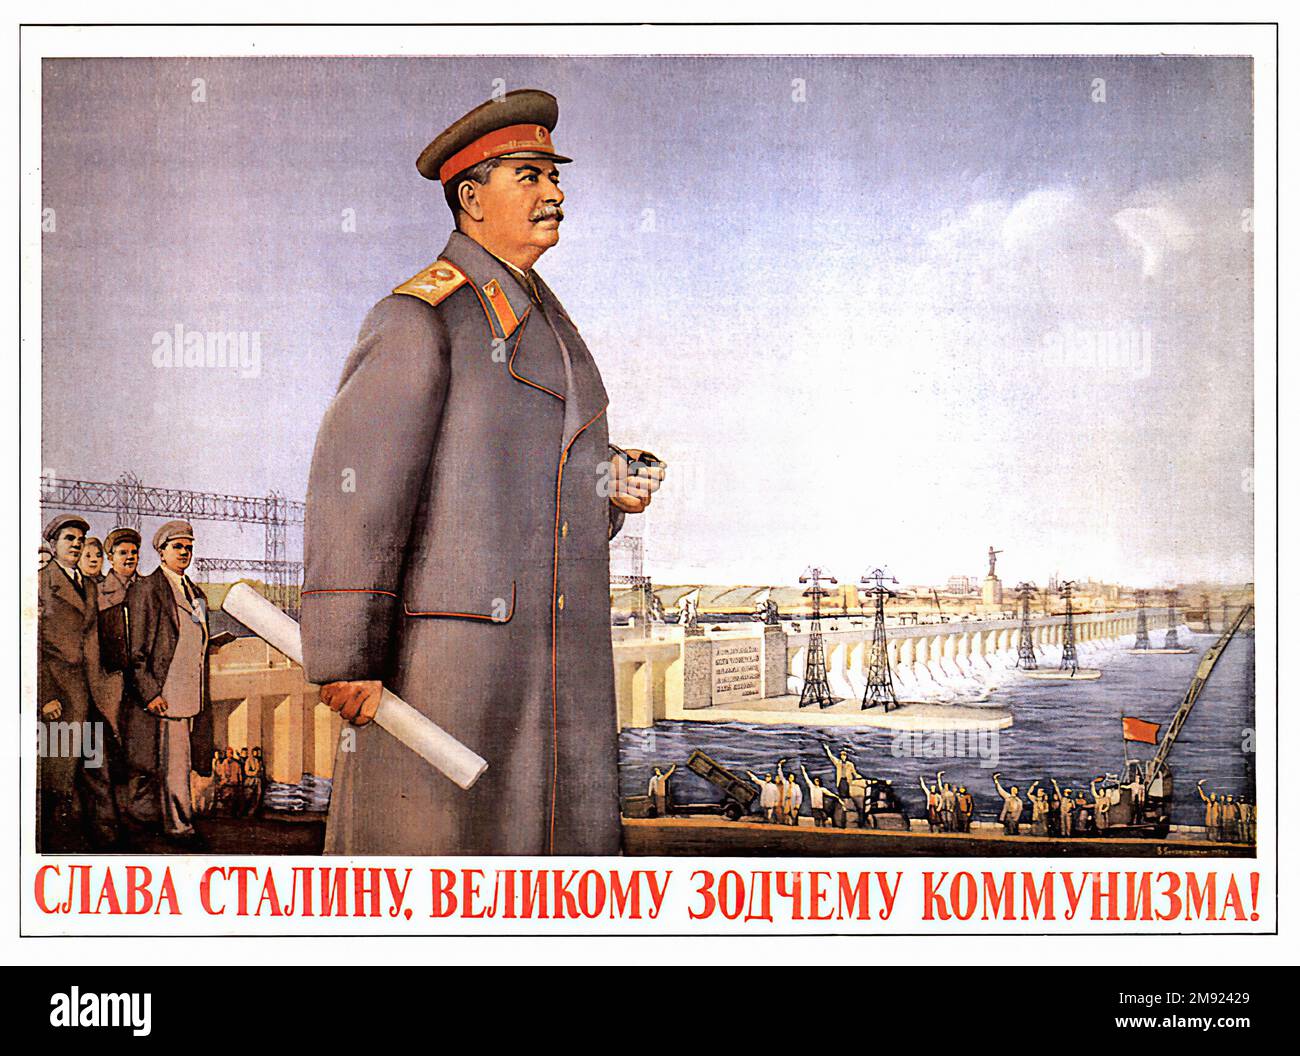 Stalin  - Vintage USSR soviet propaganda poster Stock Photo